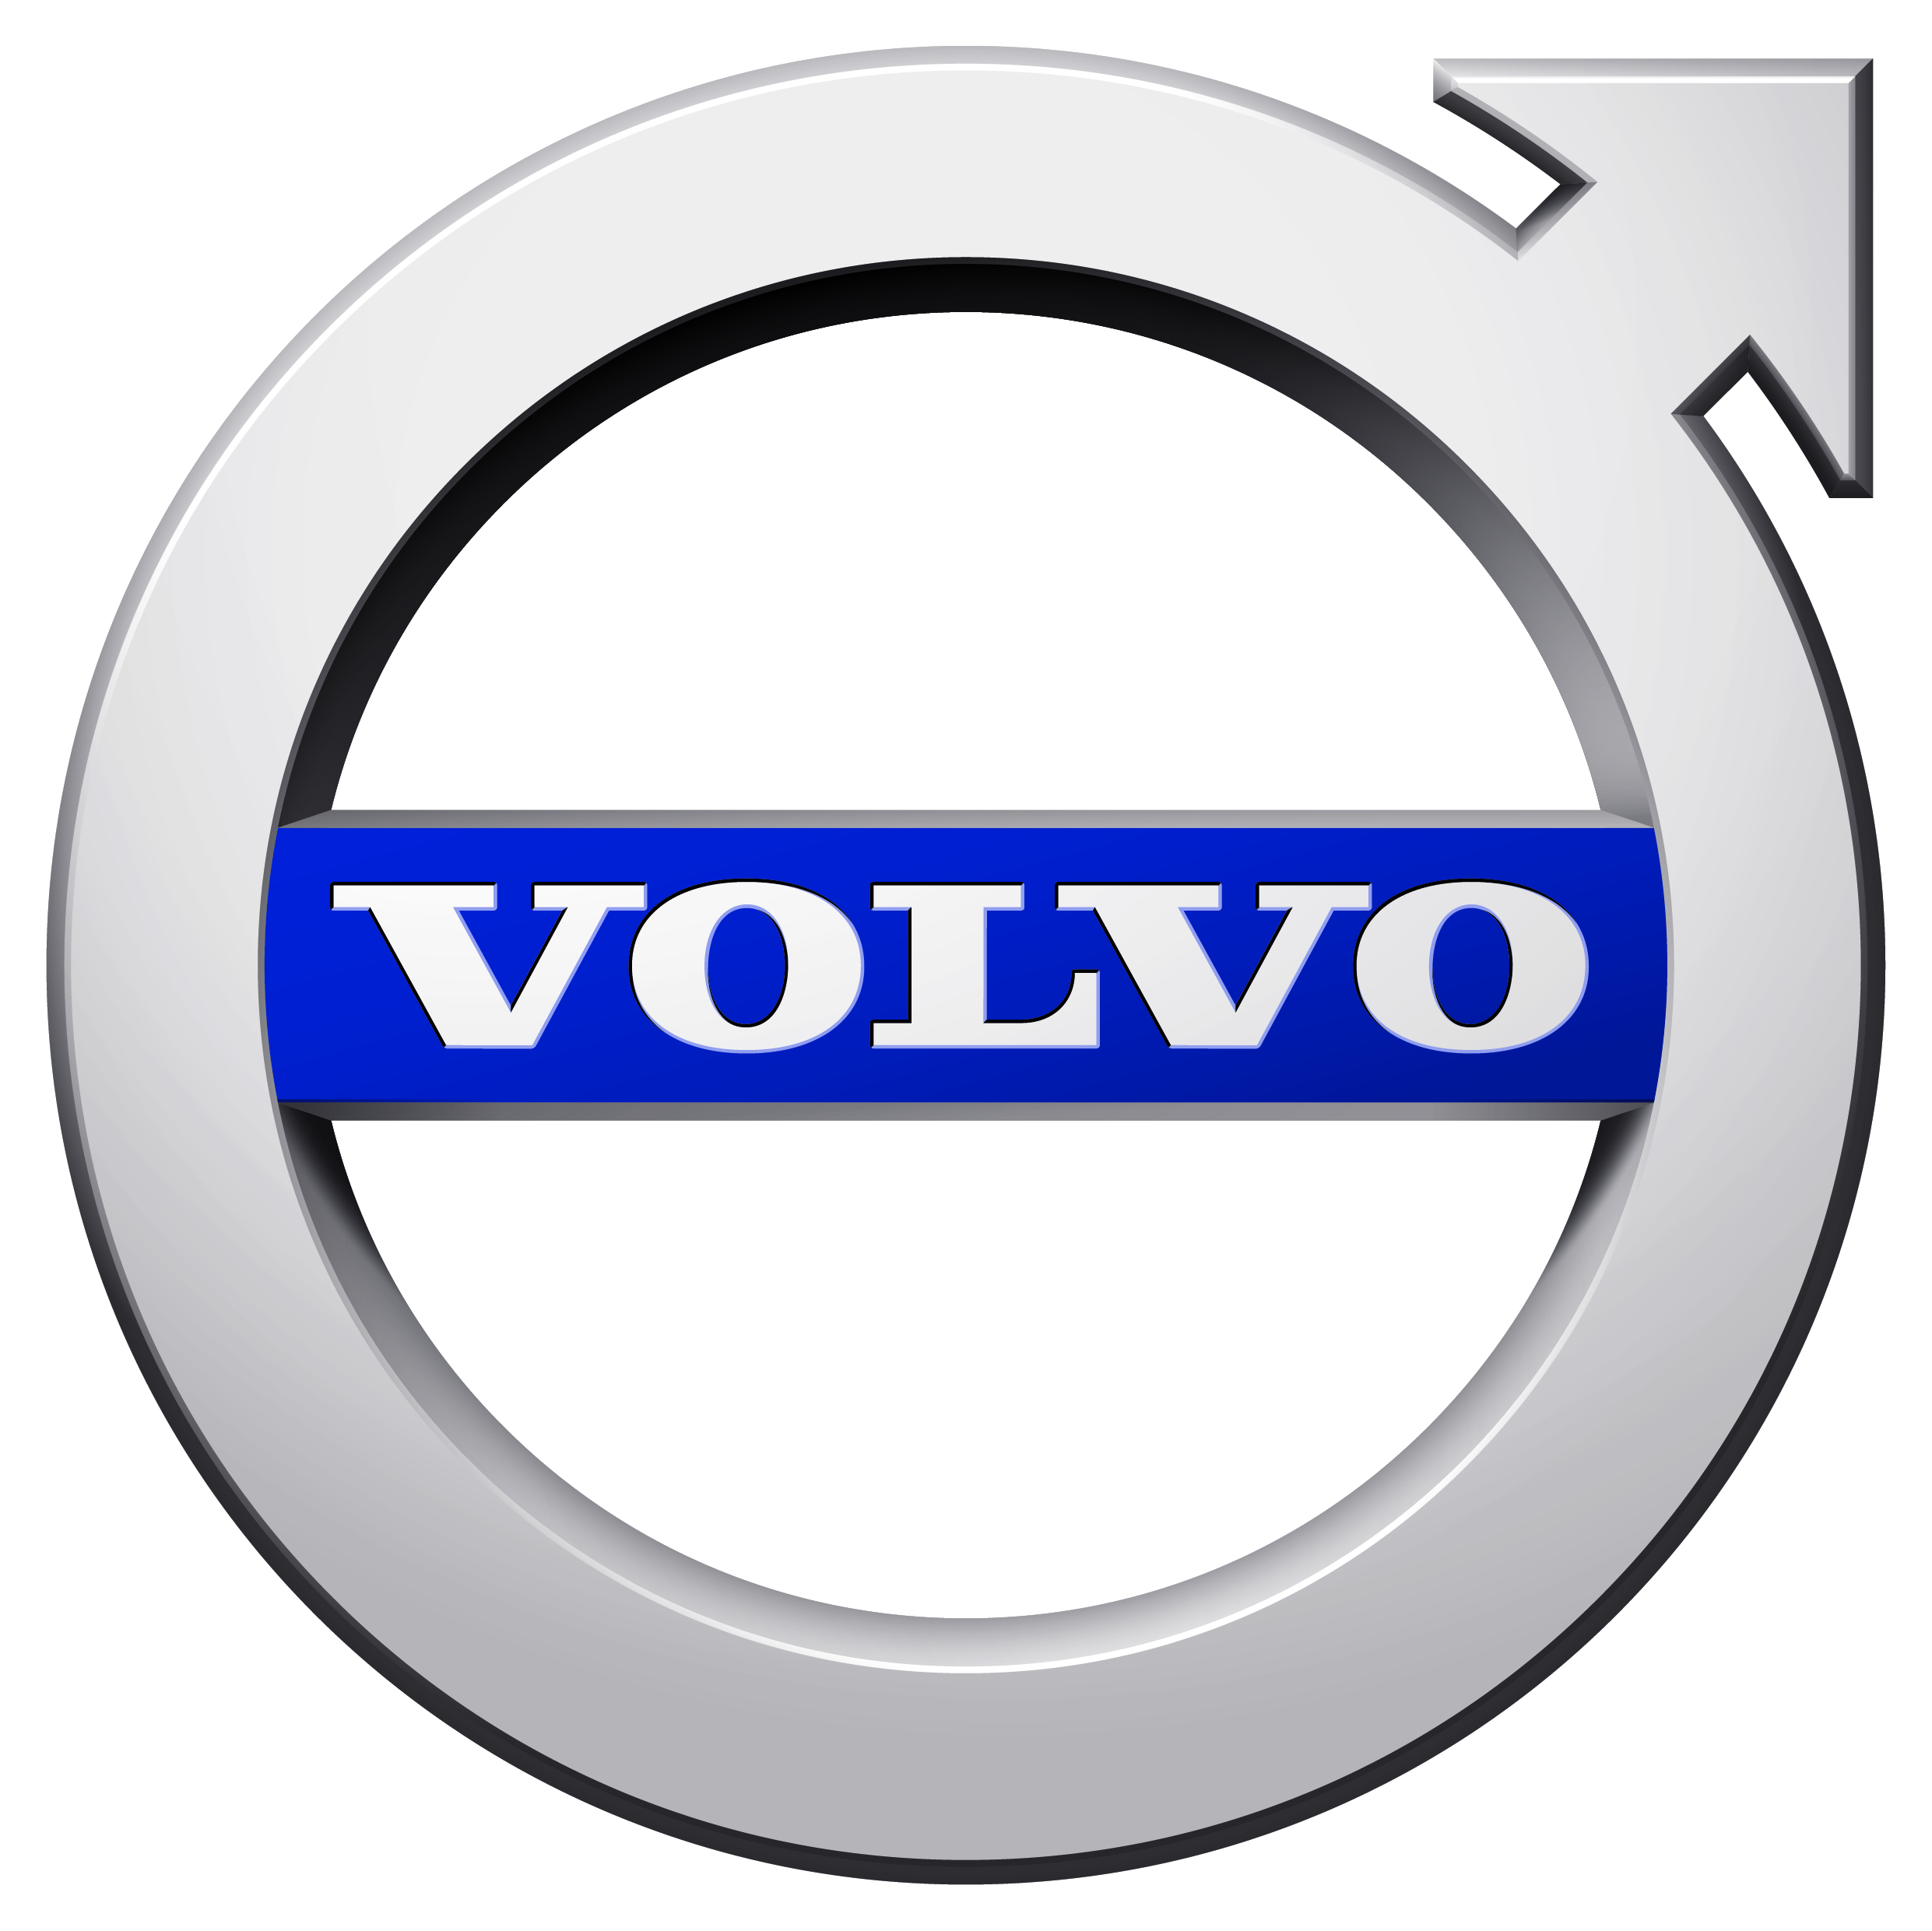 Veldi Kompetens utbildar medarbetare inom Volvo Cars och AB Volvo